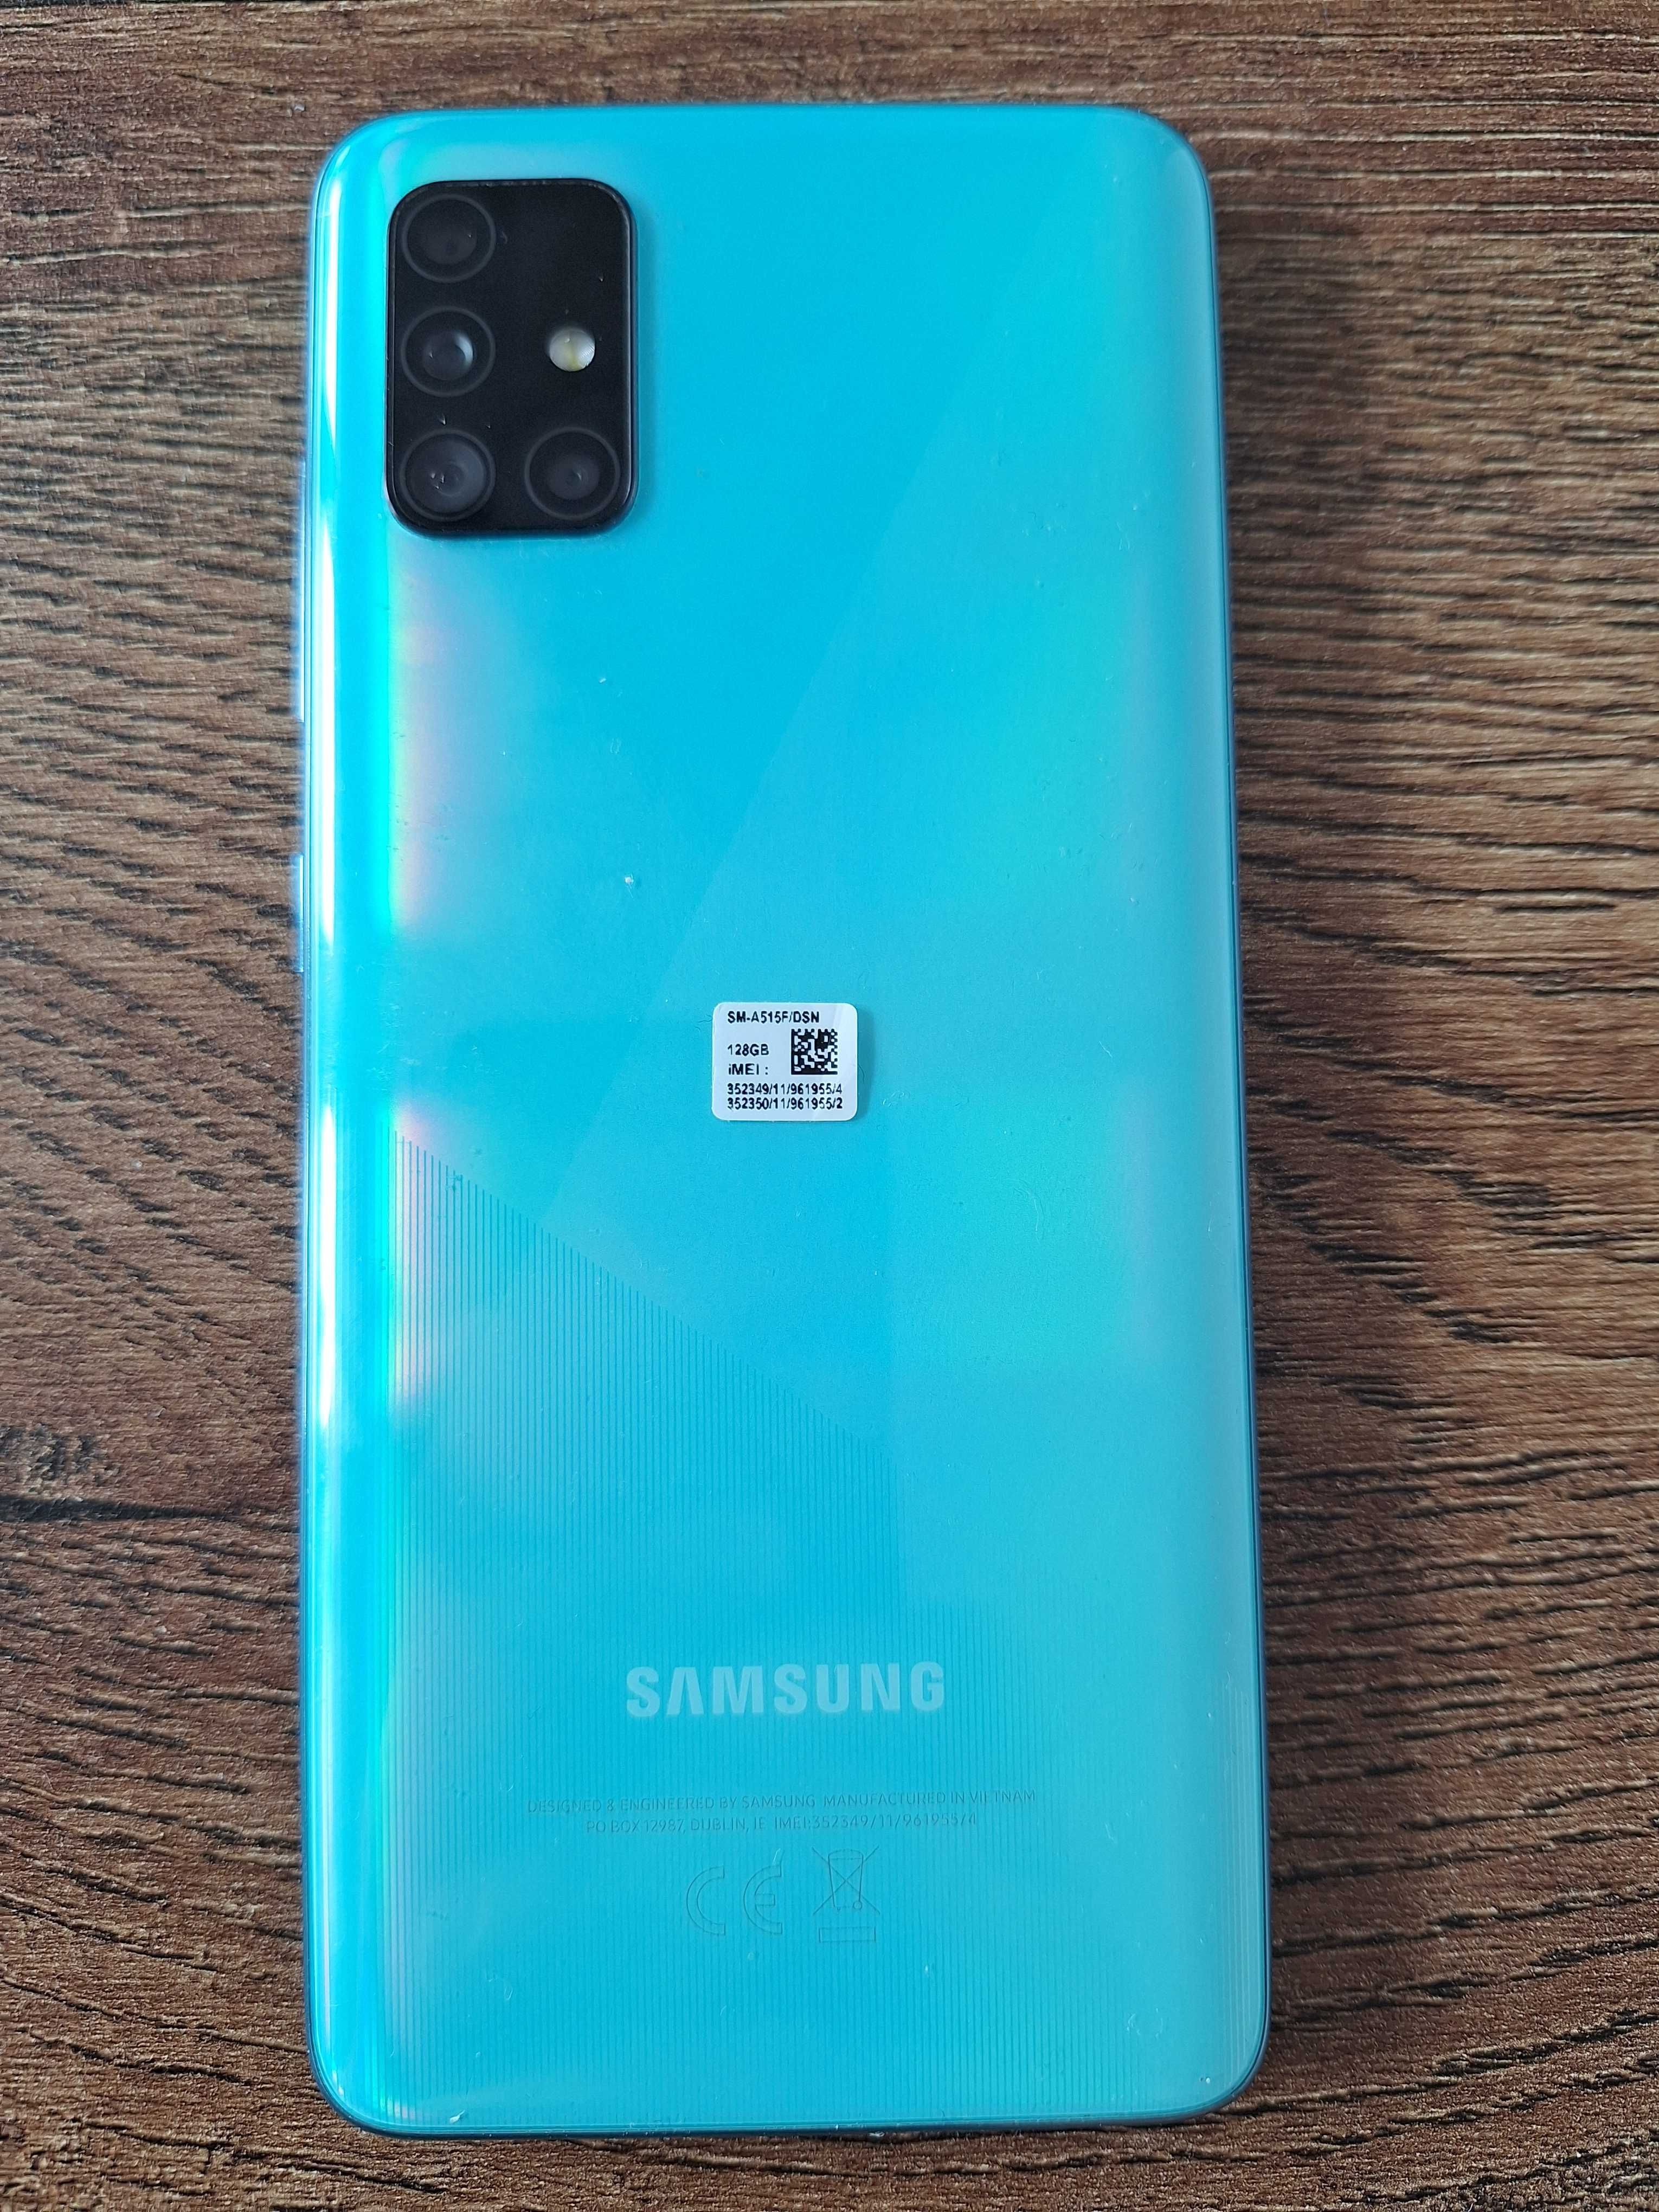 Smartfon Samsung Galaxy A51 SMA-515F/DSN Dual SIM